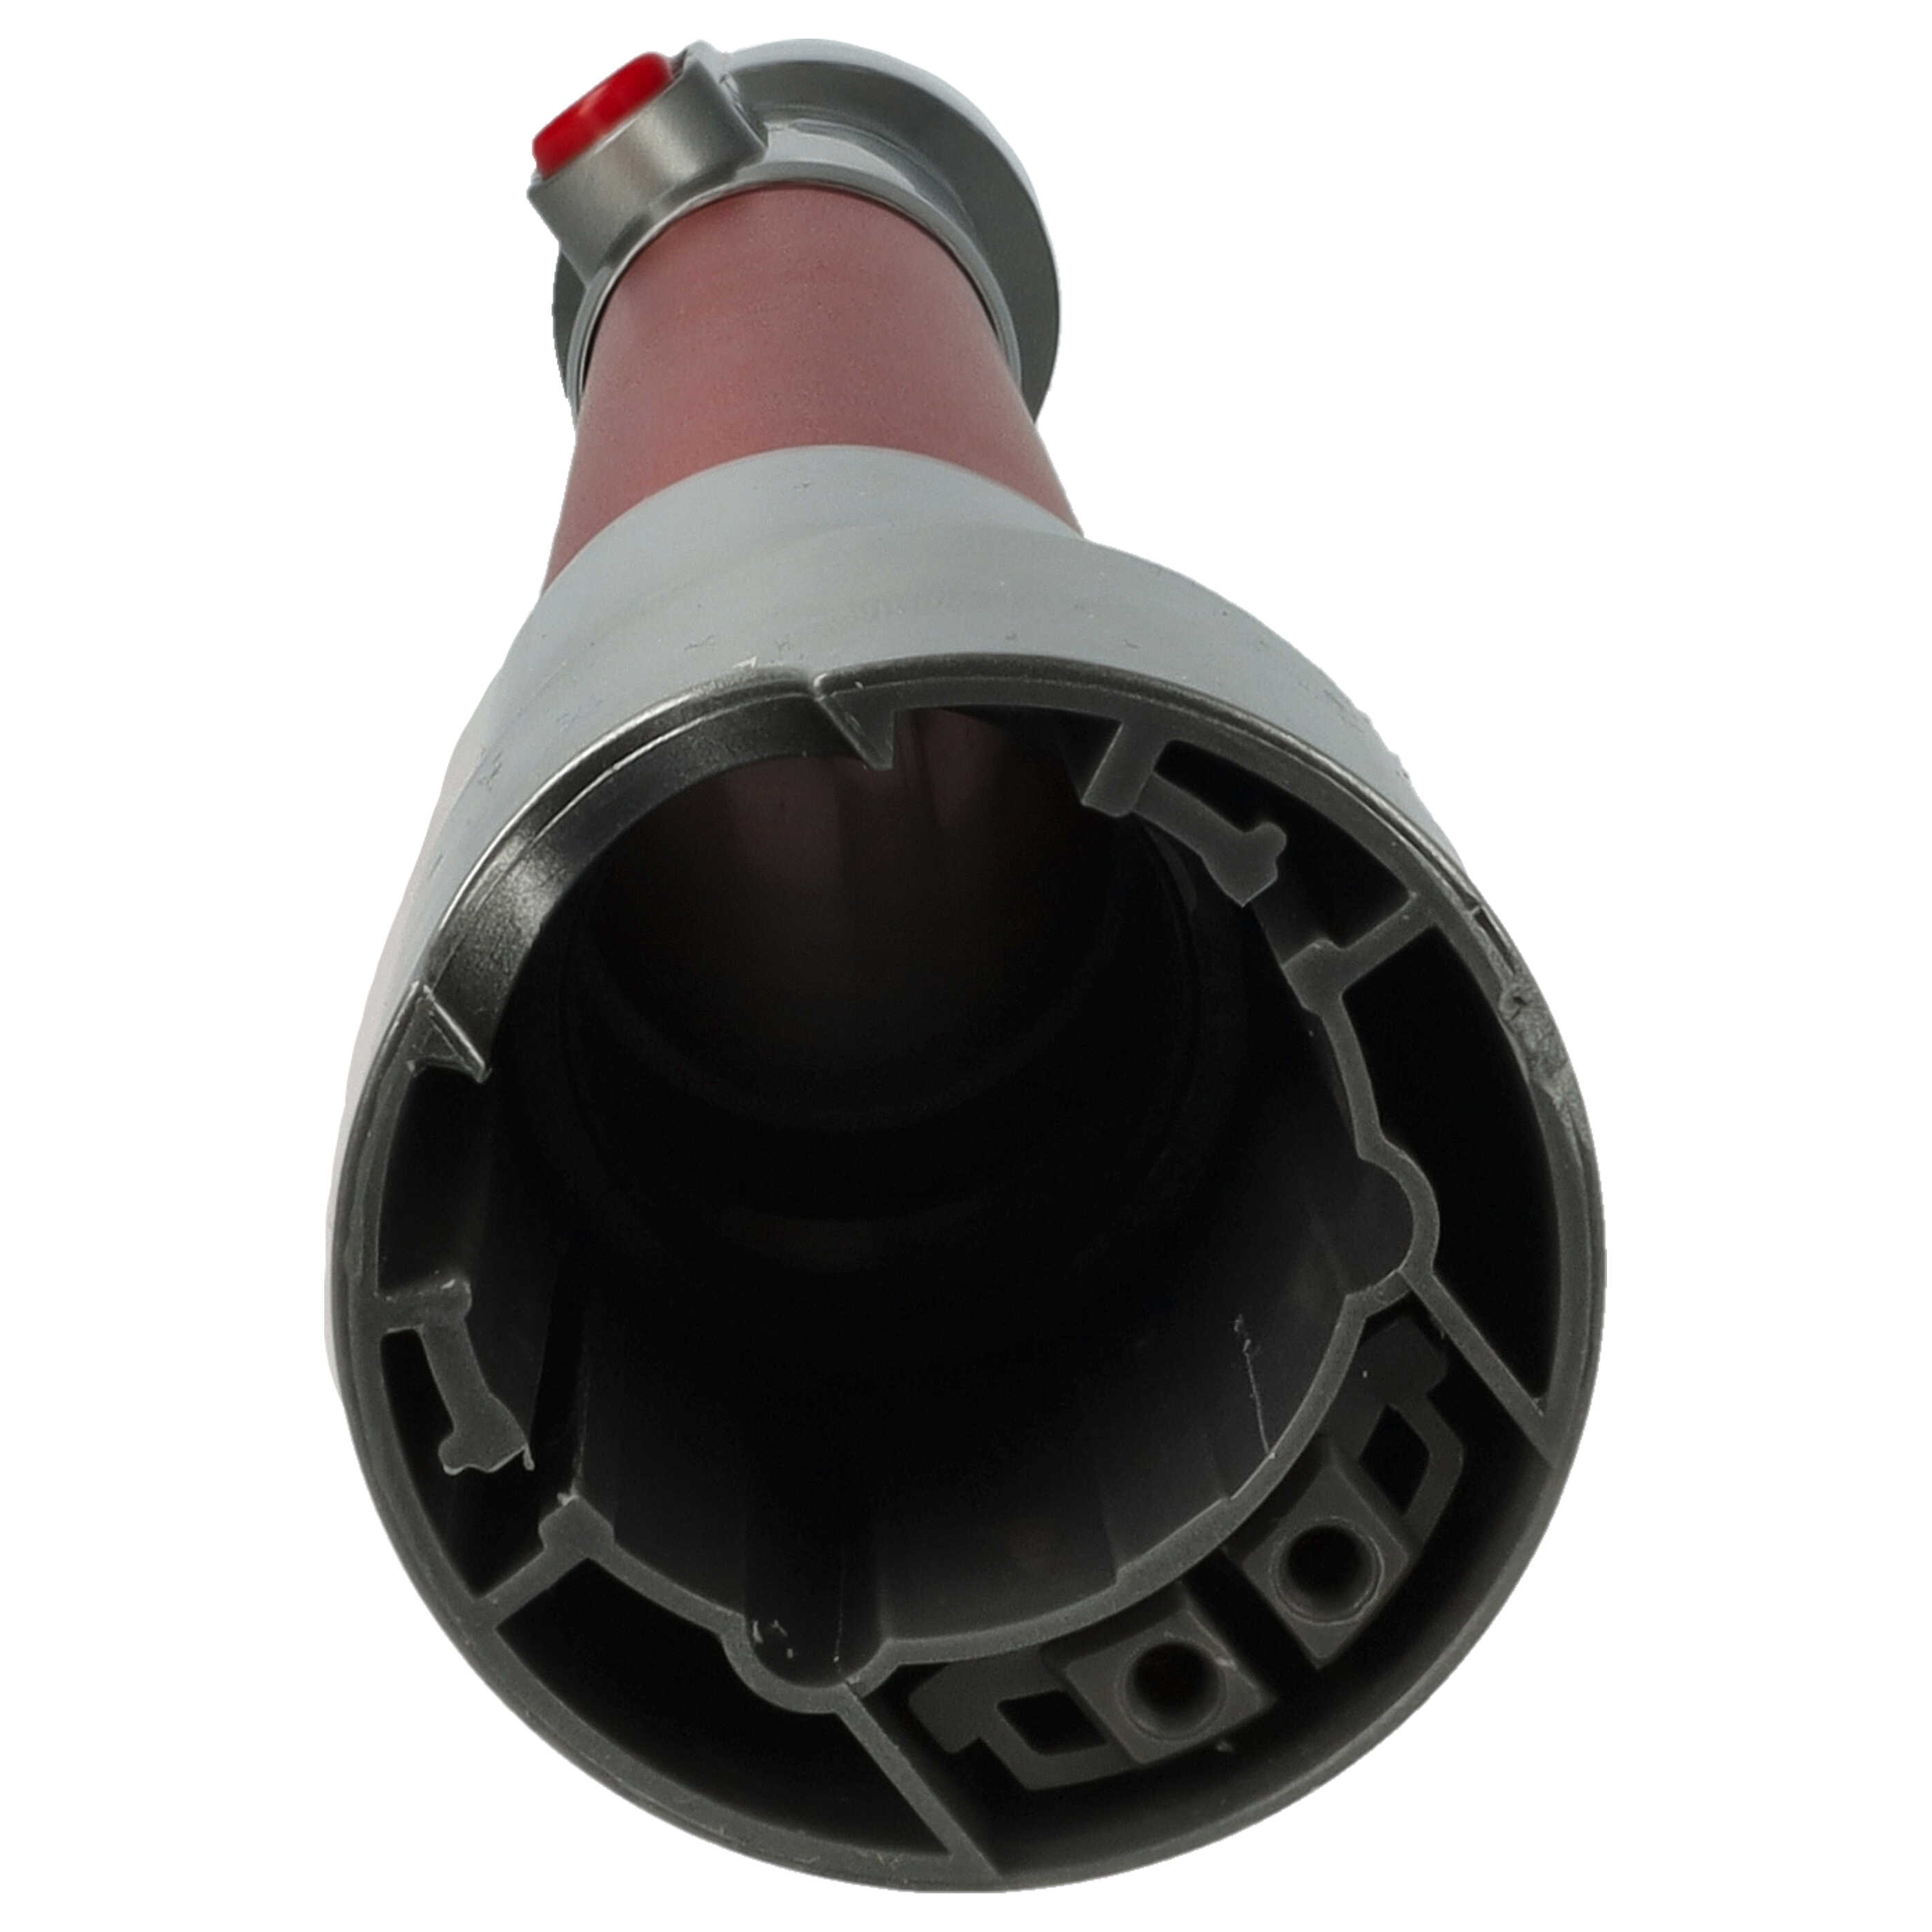 Tubo allungabile per aspirapolvere Dyson SV10 - rosso